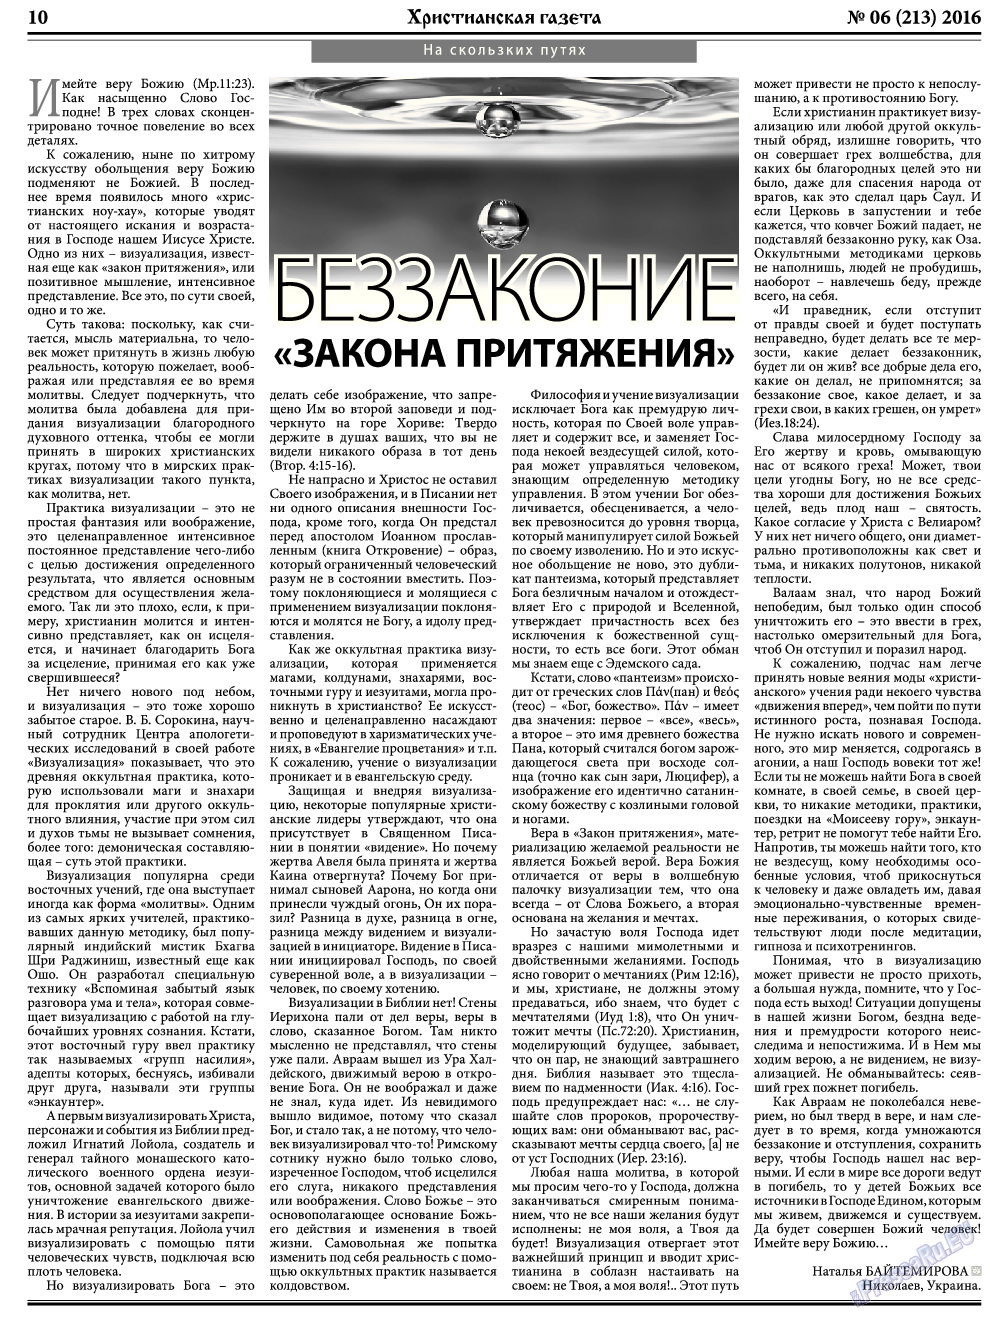 Христианская газета, газета. 2016 №6 стр.10